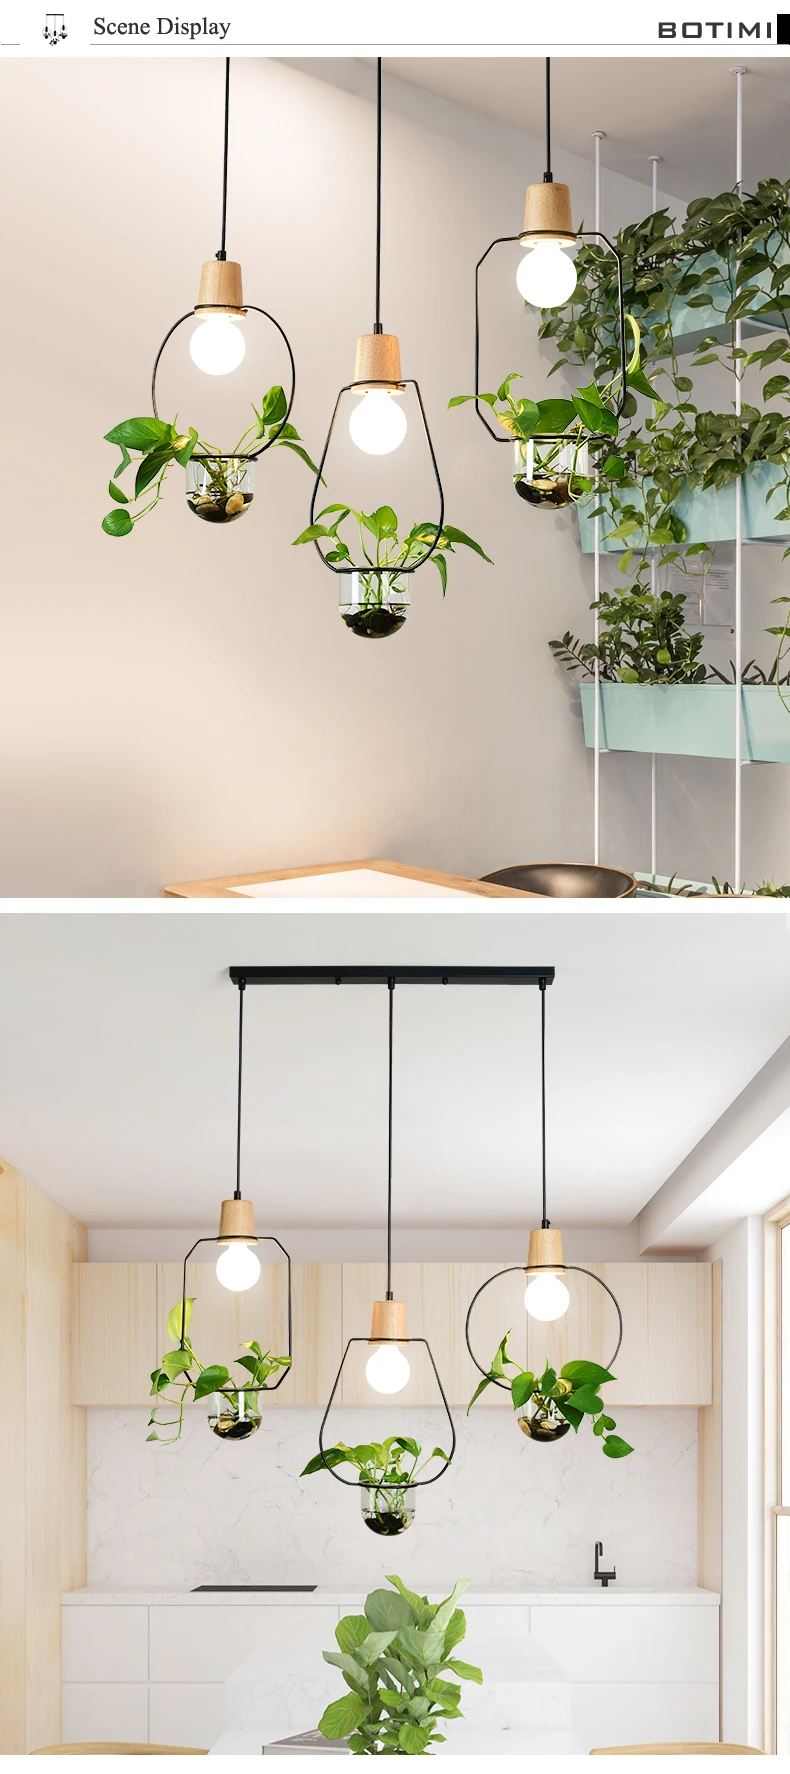 BOTIMI скандинавский подвесной светильник s для столовой Кофейни подвесной светильник Рестер Ресторан Бар лампы без растений